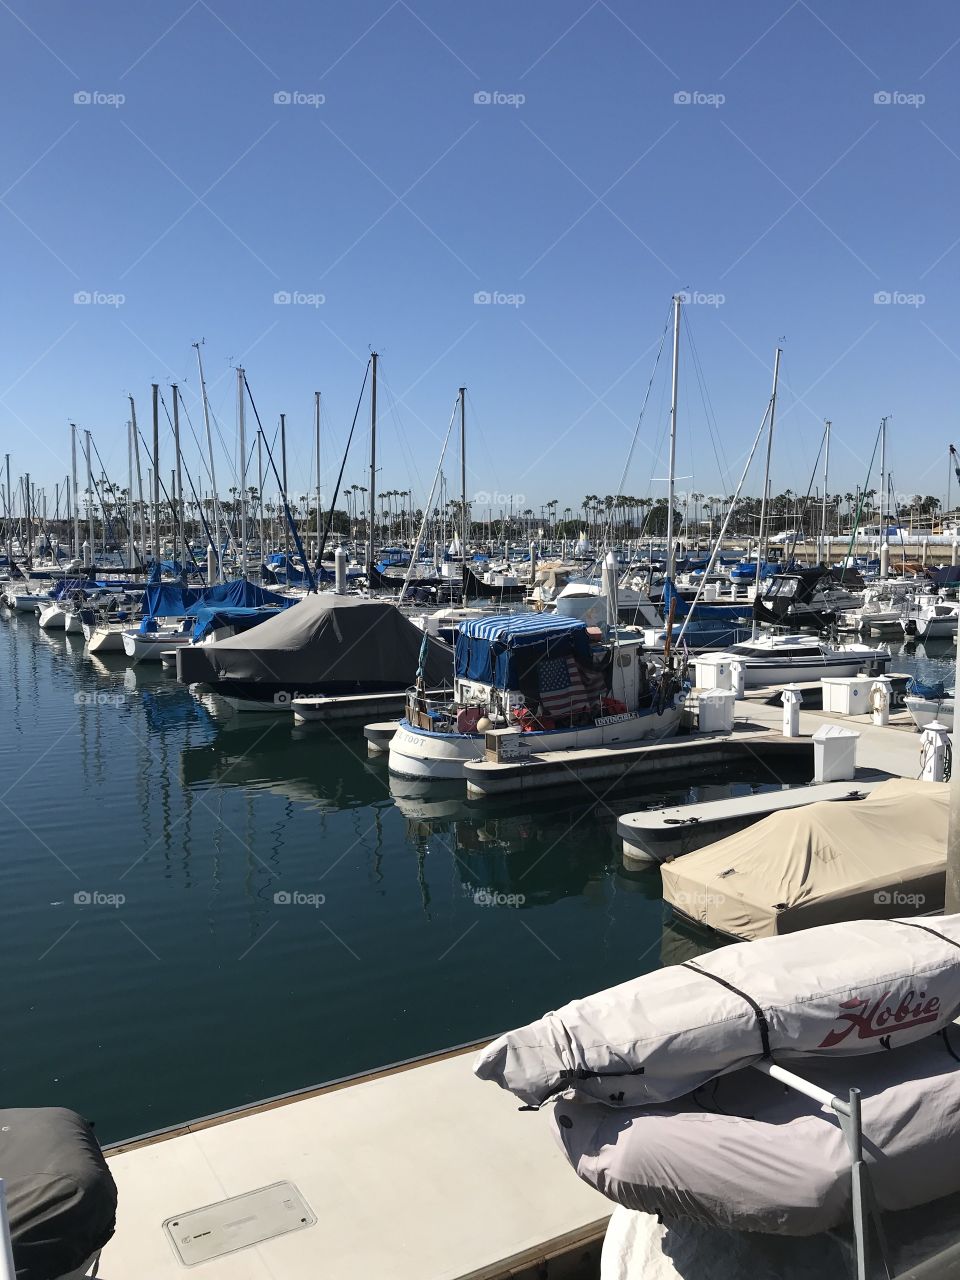 Long Beach Marina